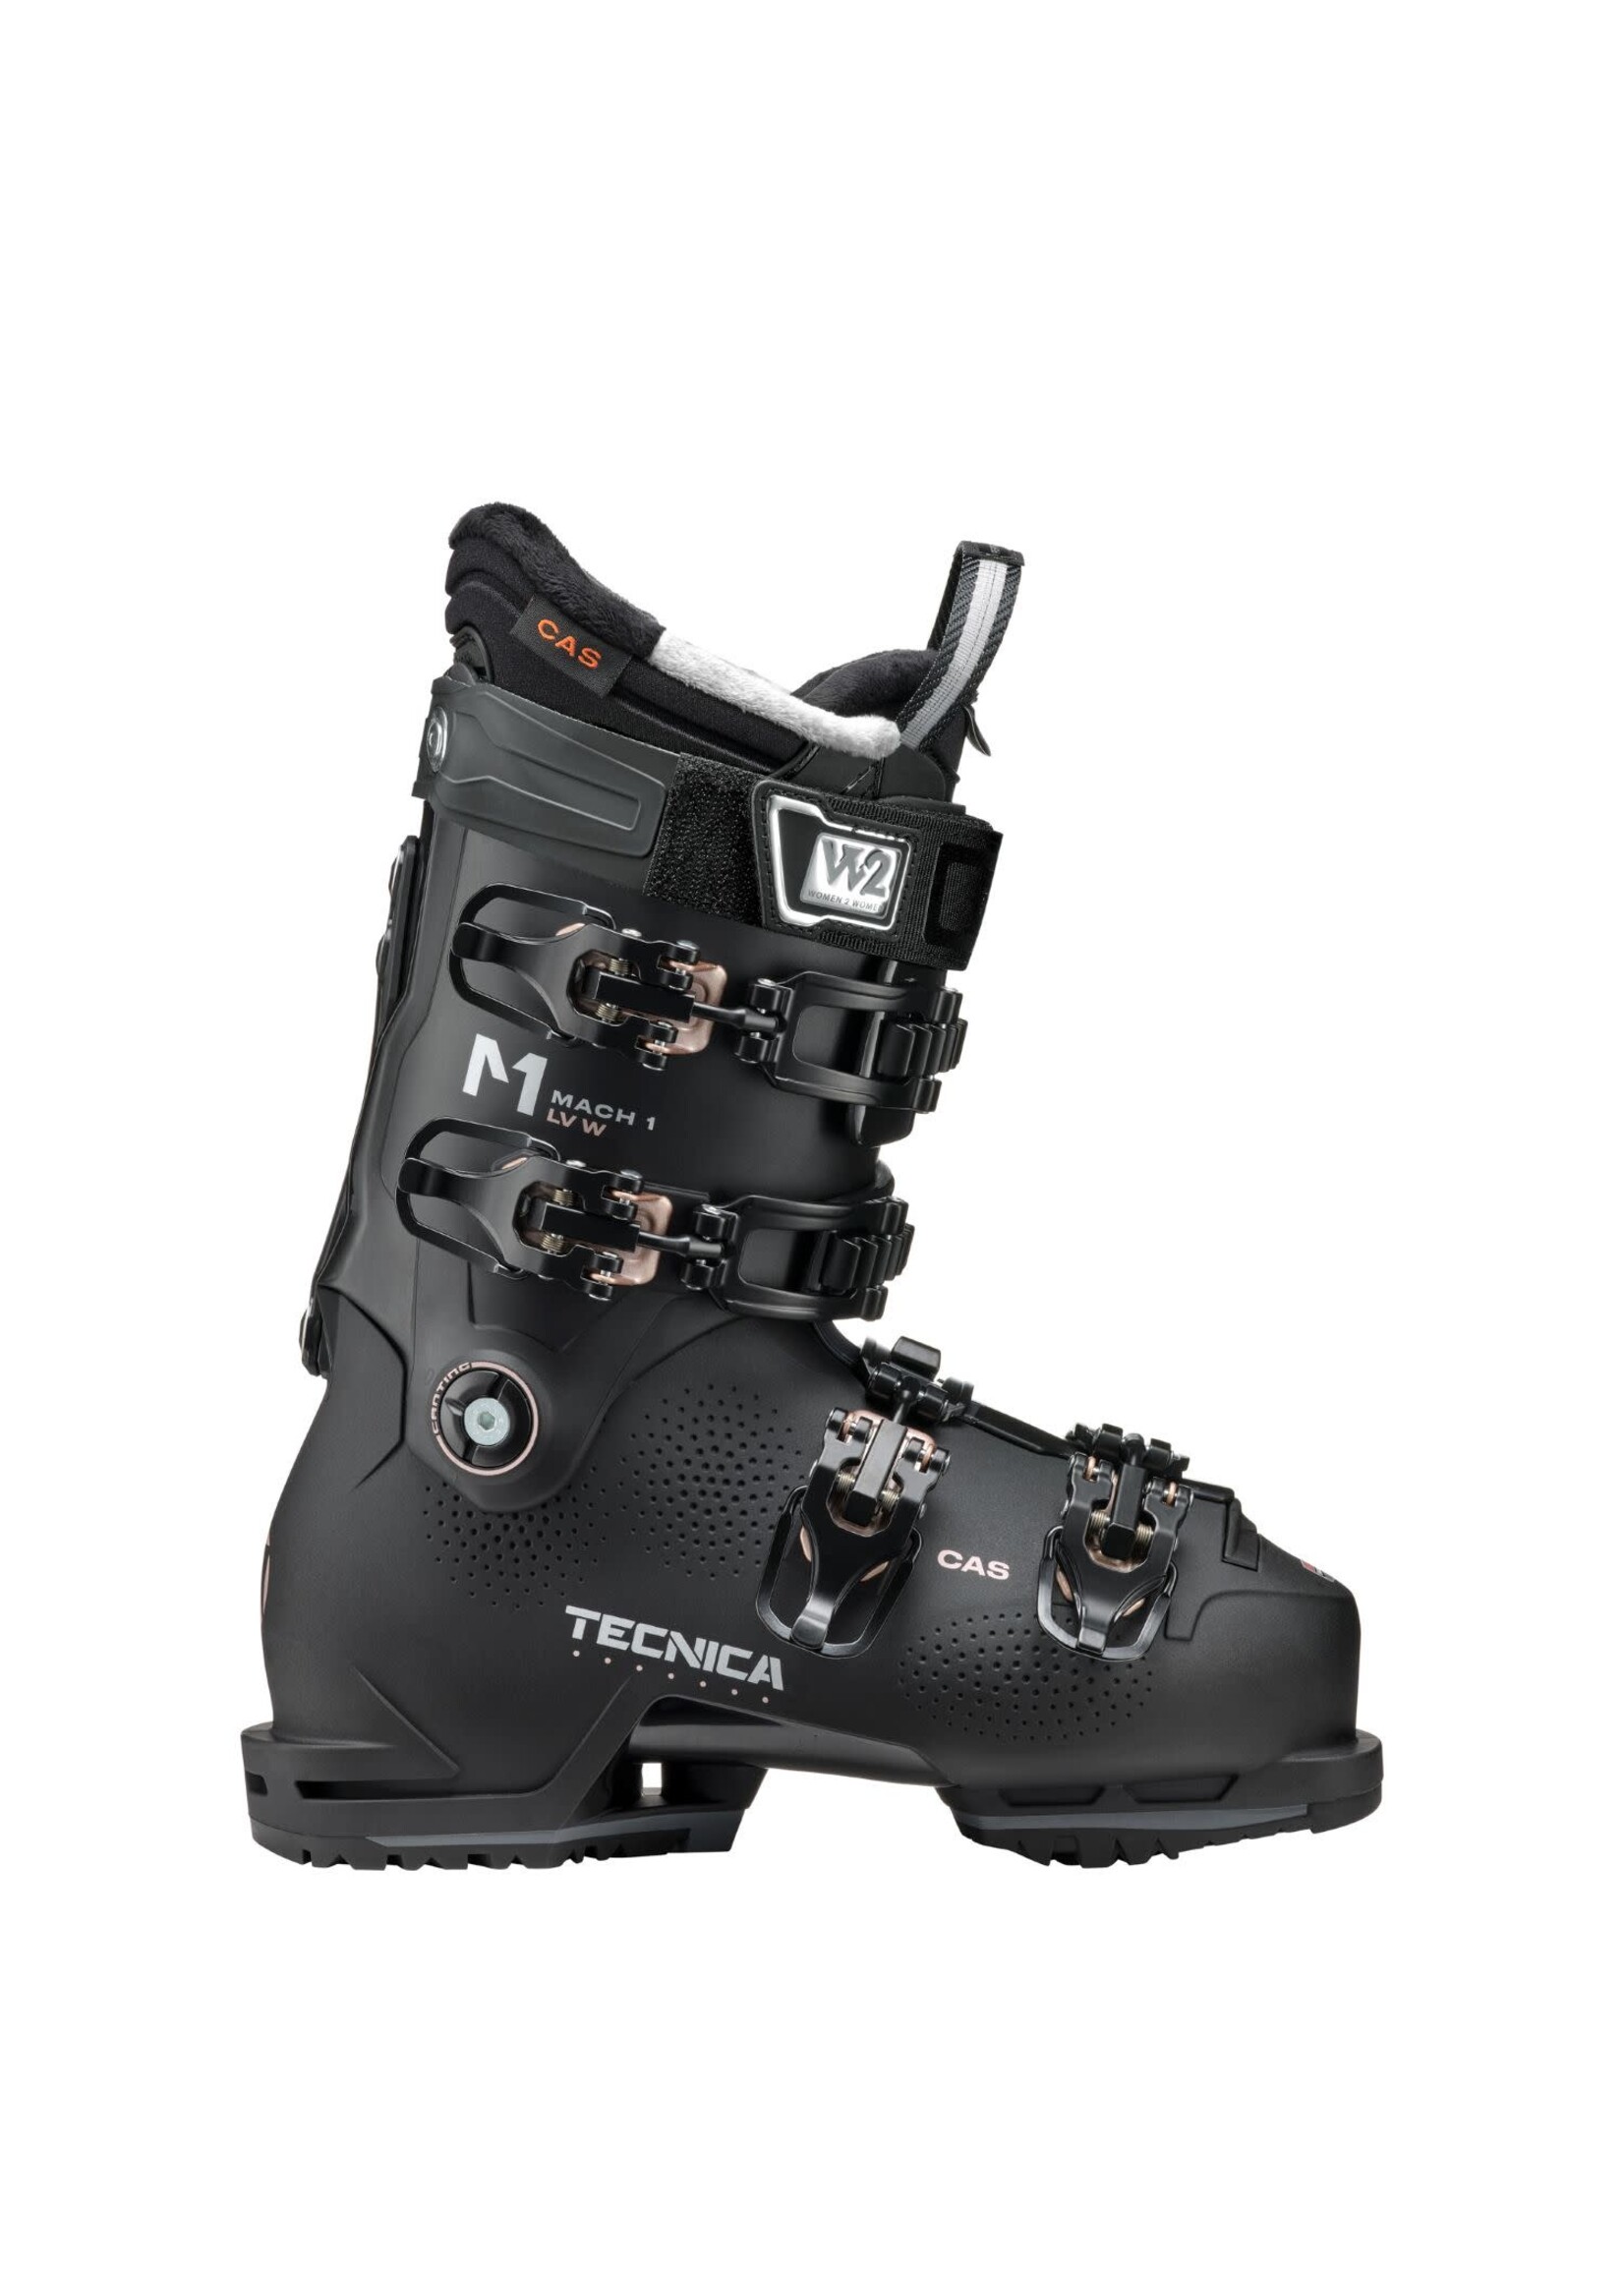 Tecnica Tecnica Mach1 LV 105 Ski Boot - Women